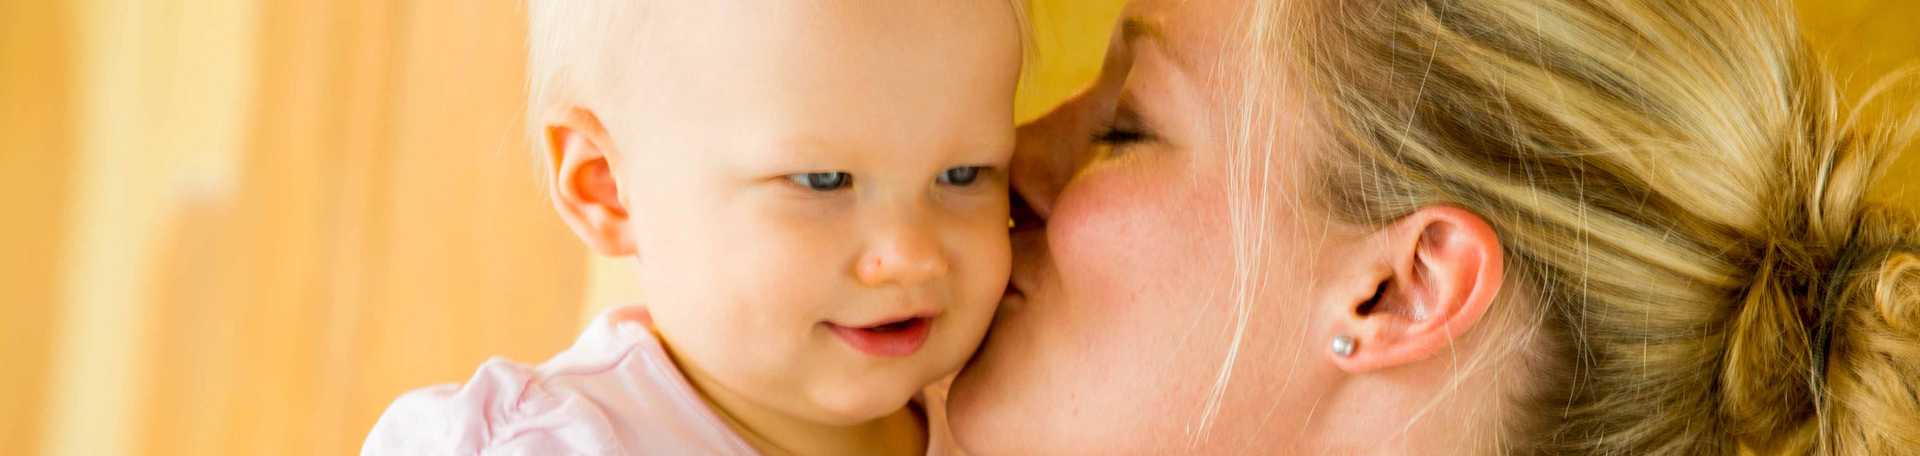 Illustrationsporträt: Mutter küsst Kleinkind auf die Backe